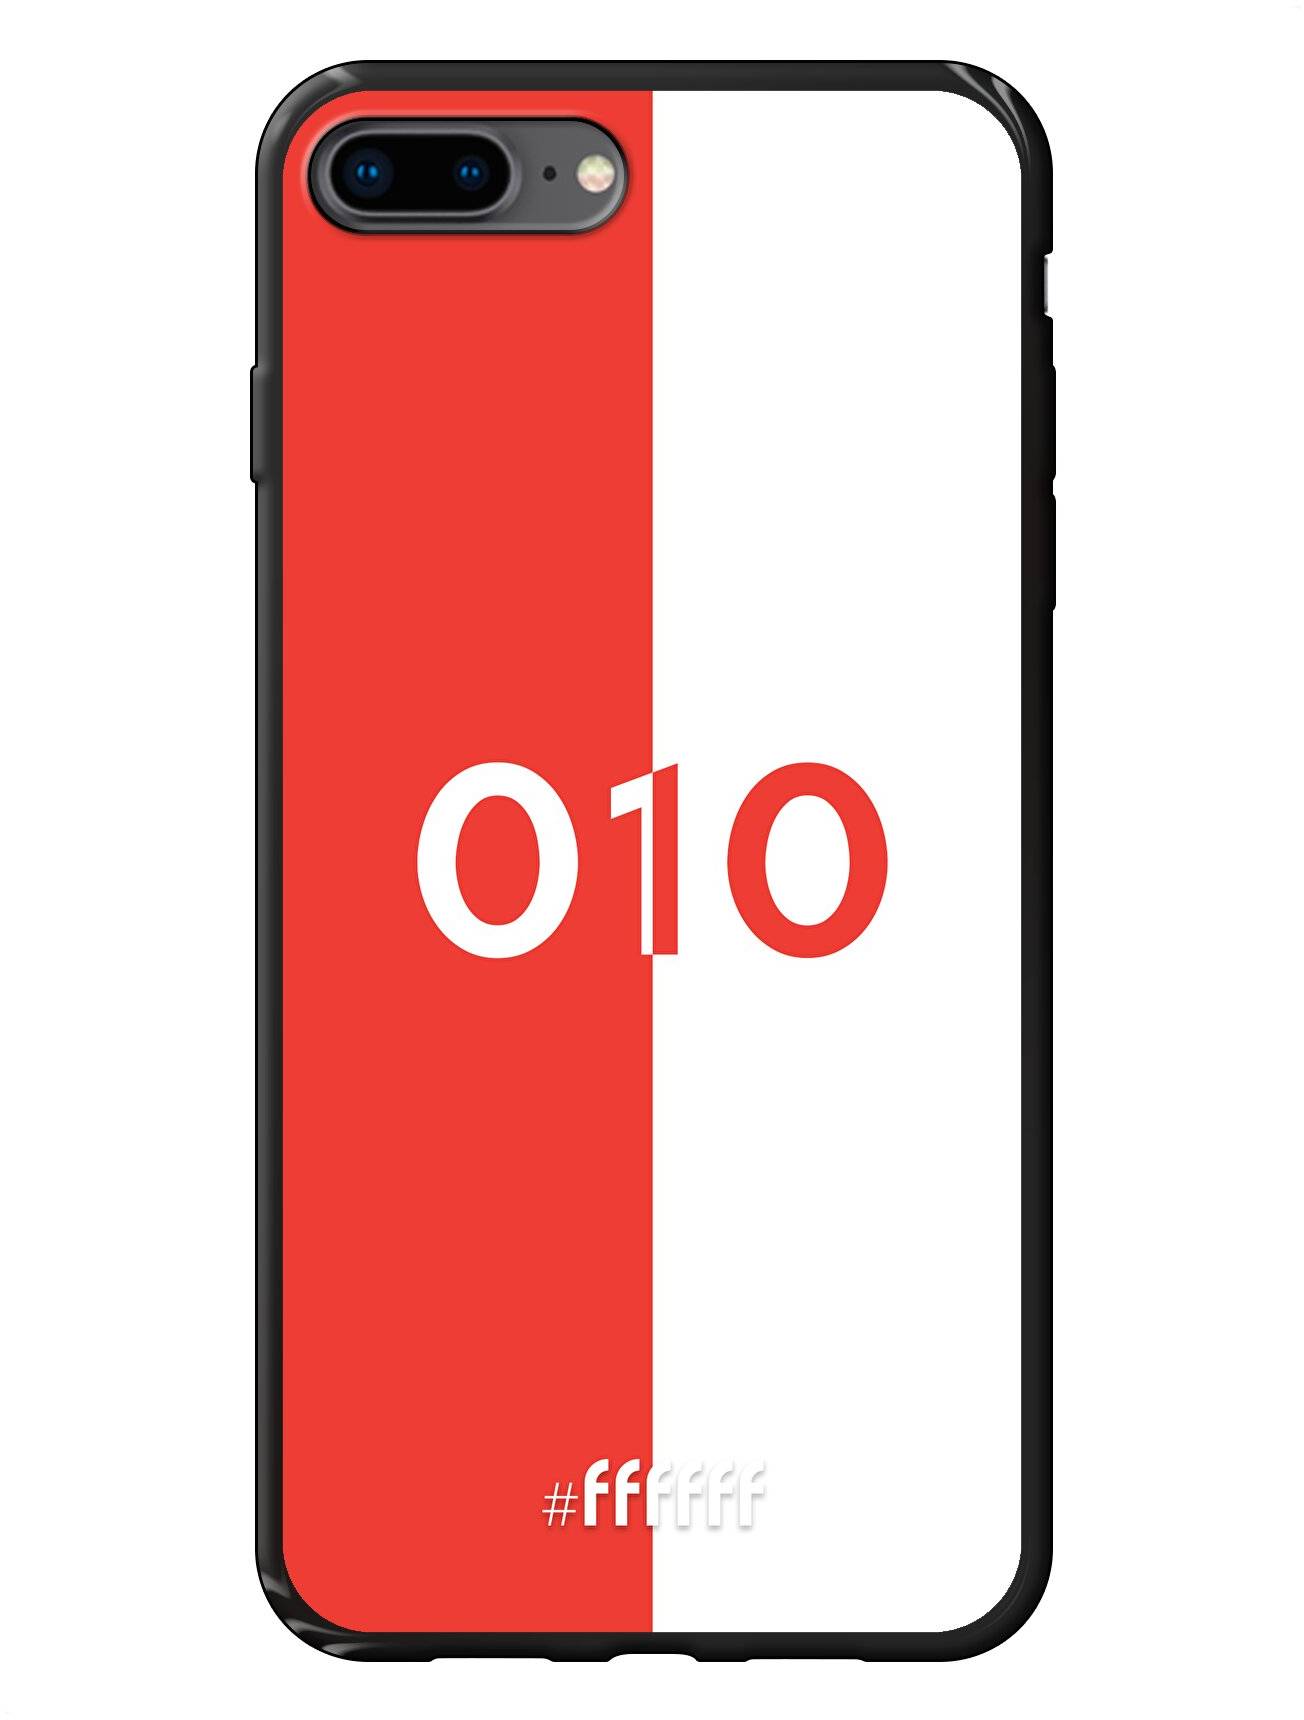 Feyenoord - 010 iPhone 8 Plus